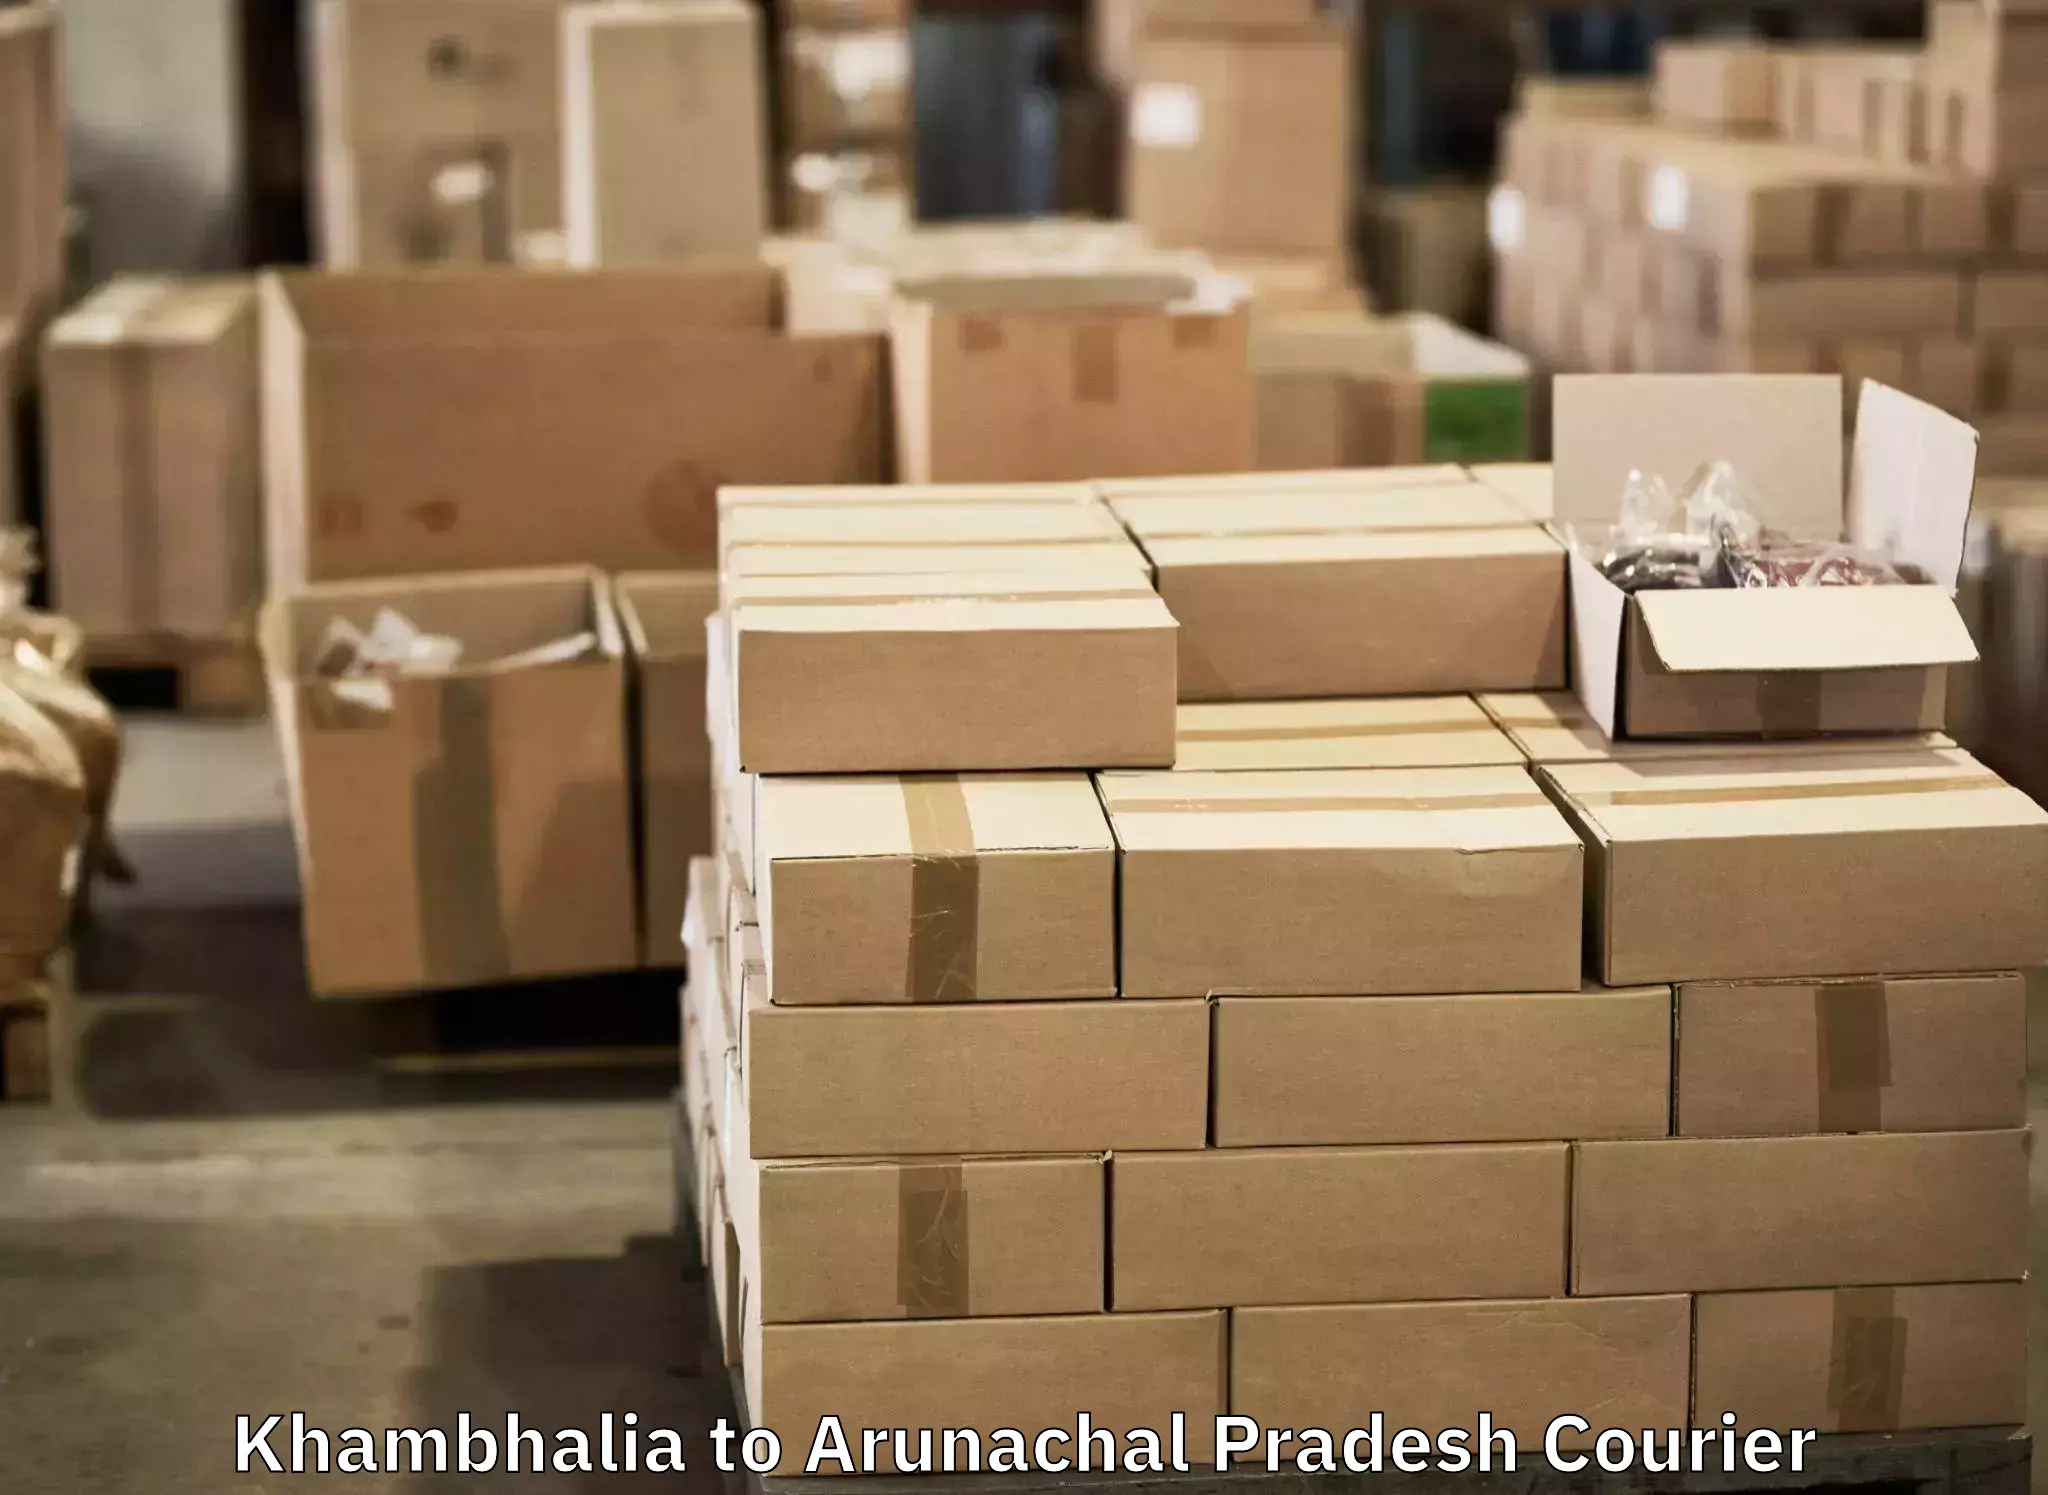 Luggage delivery network Khambhalia to Diyun